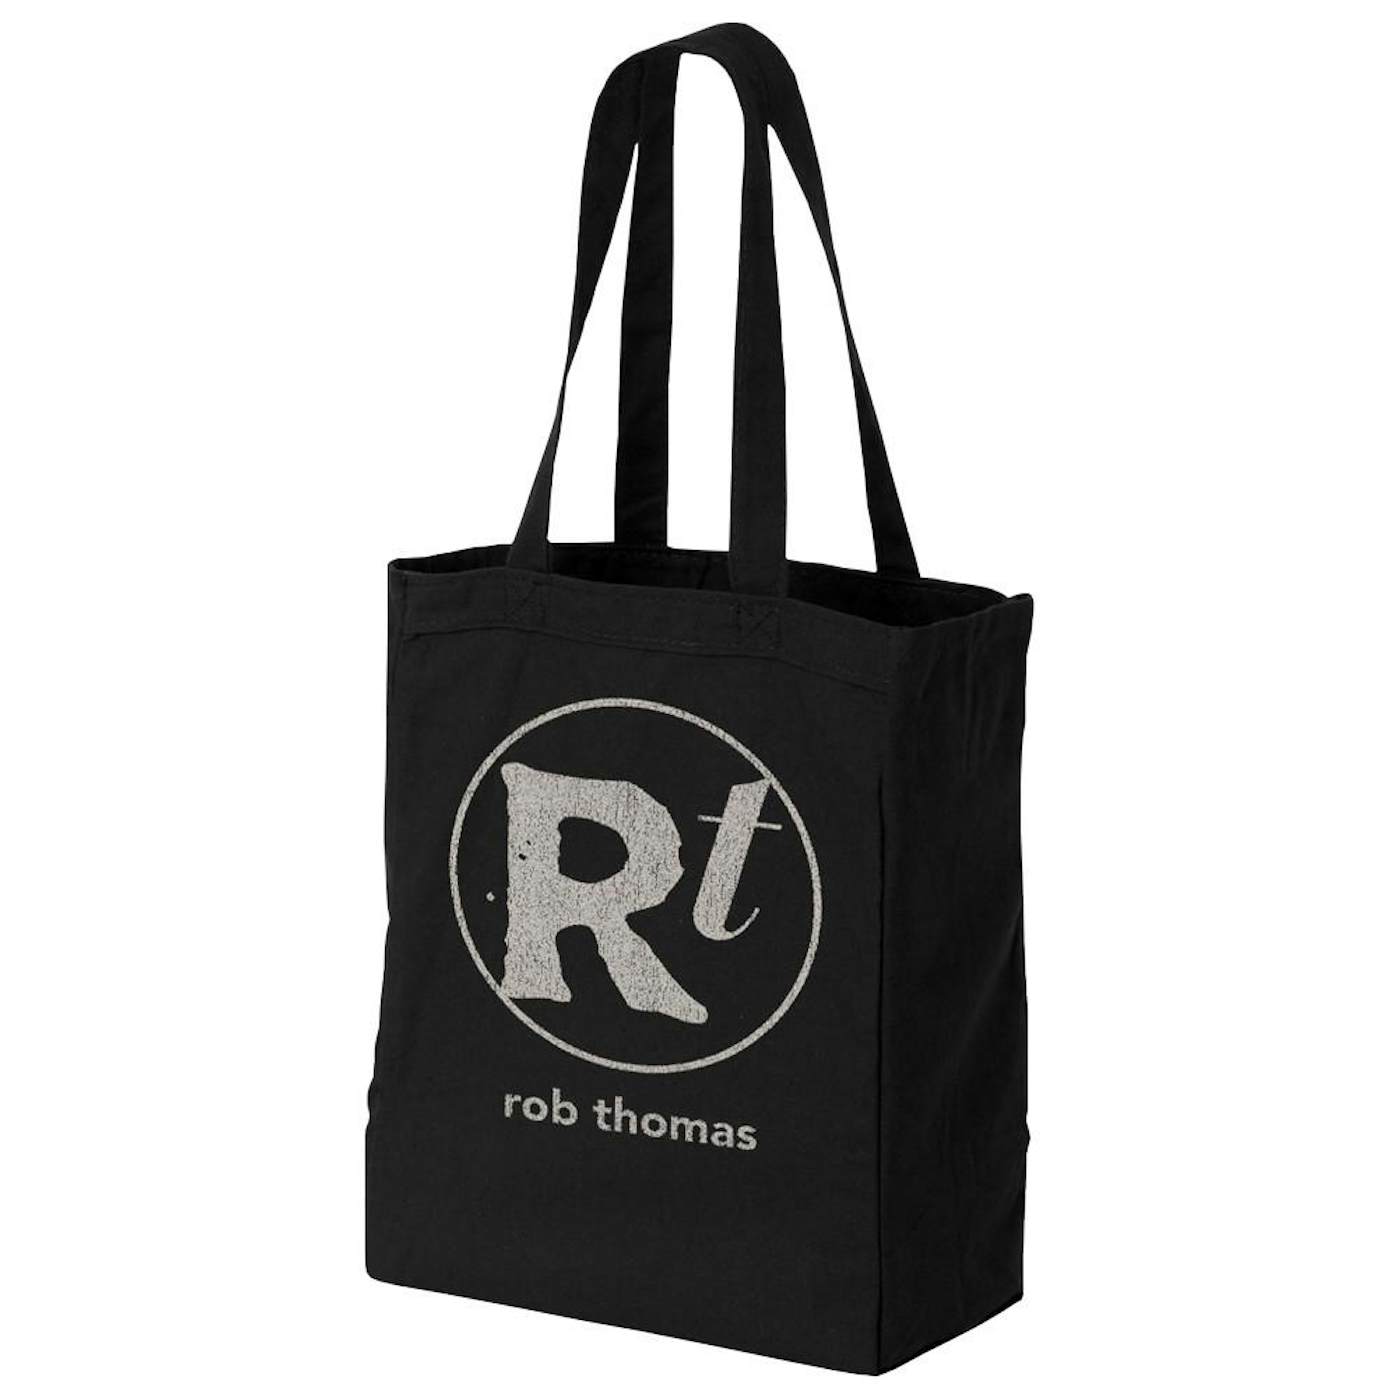 Rob Thomas Tote Bag